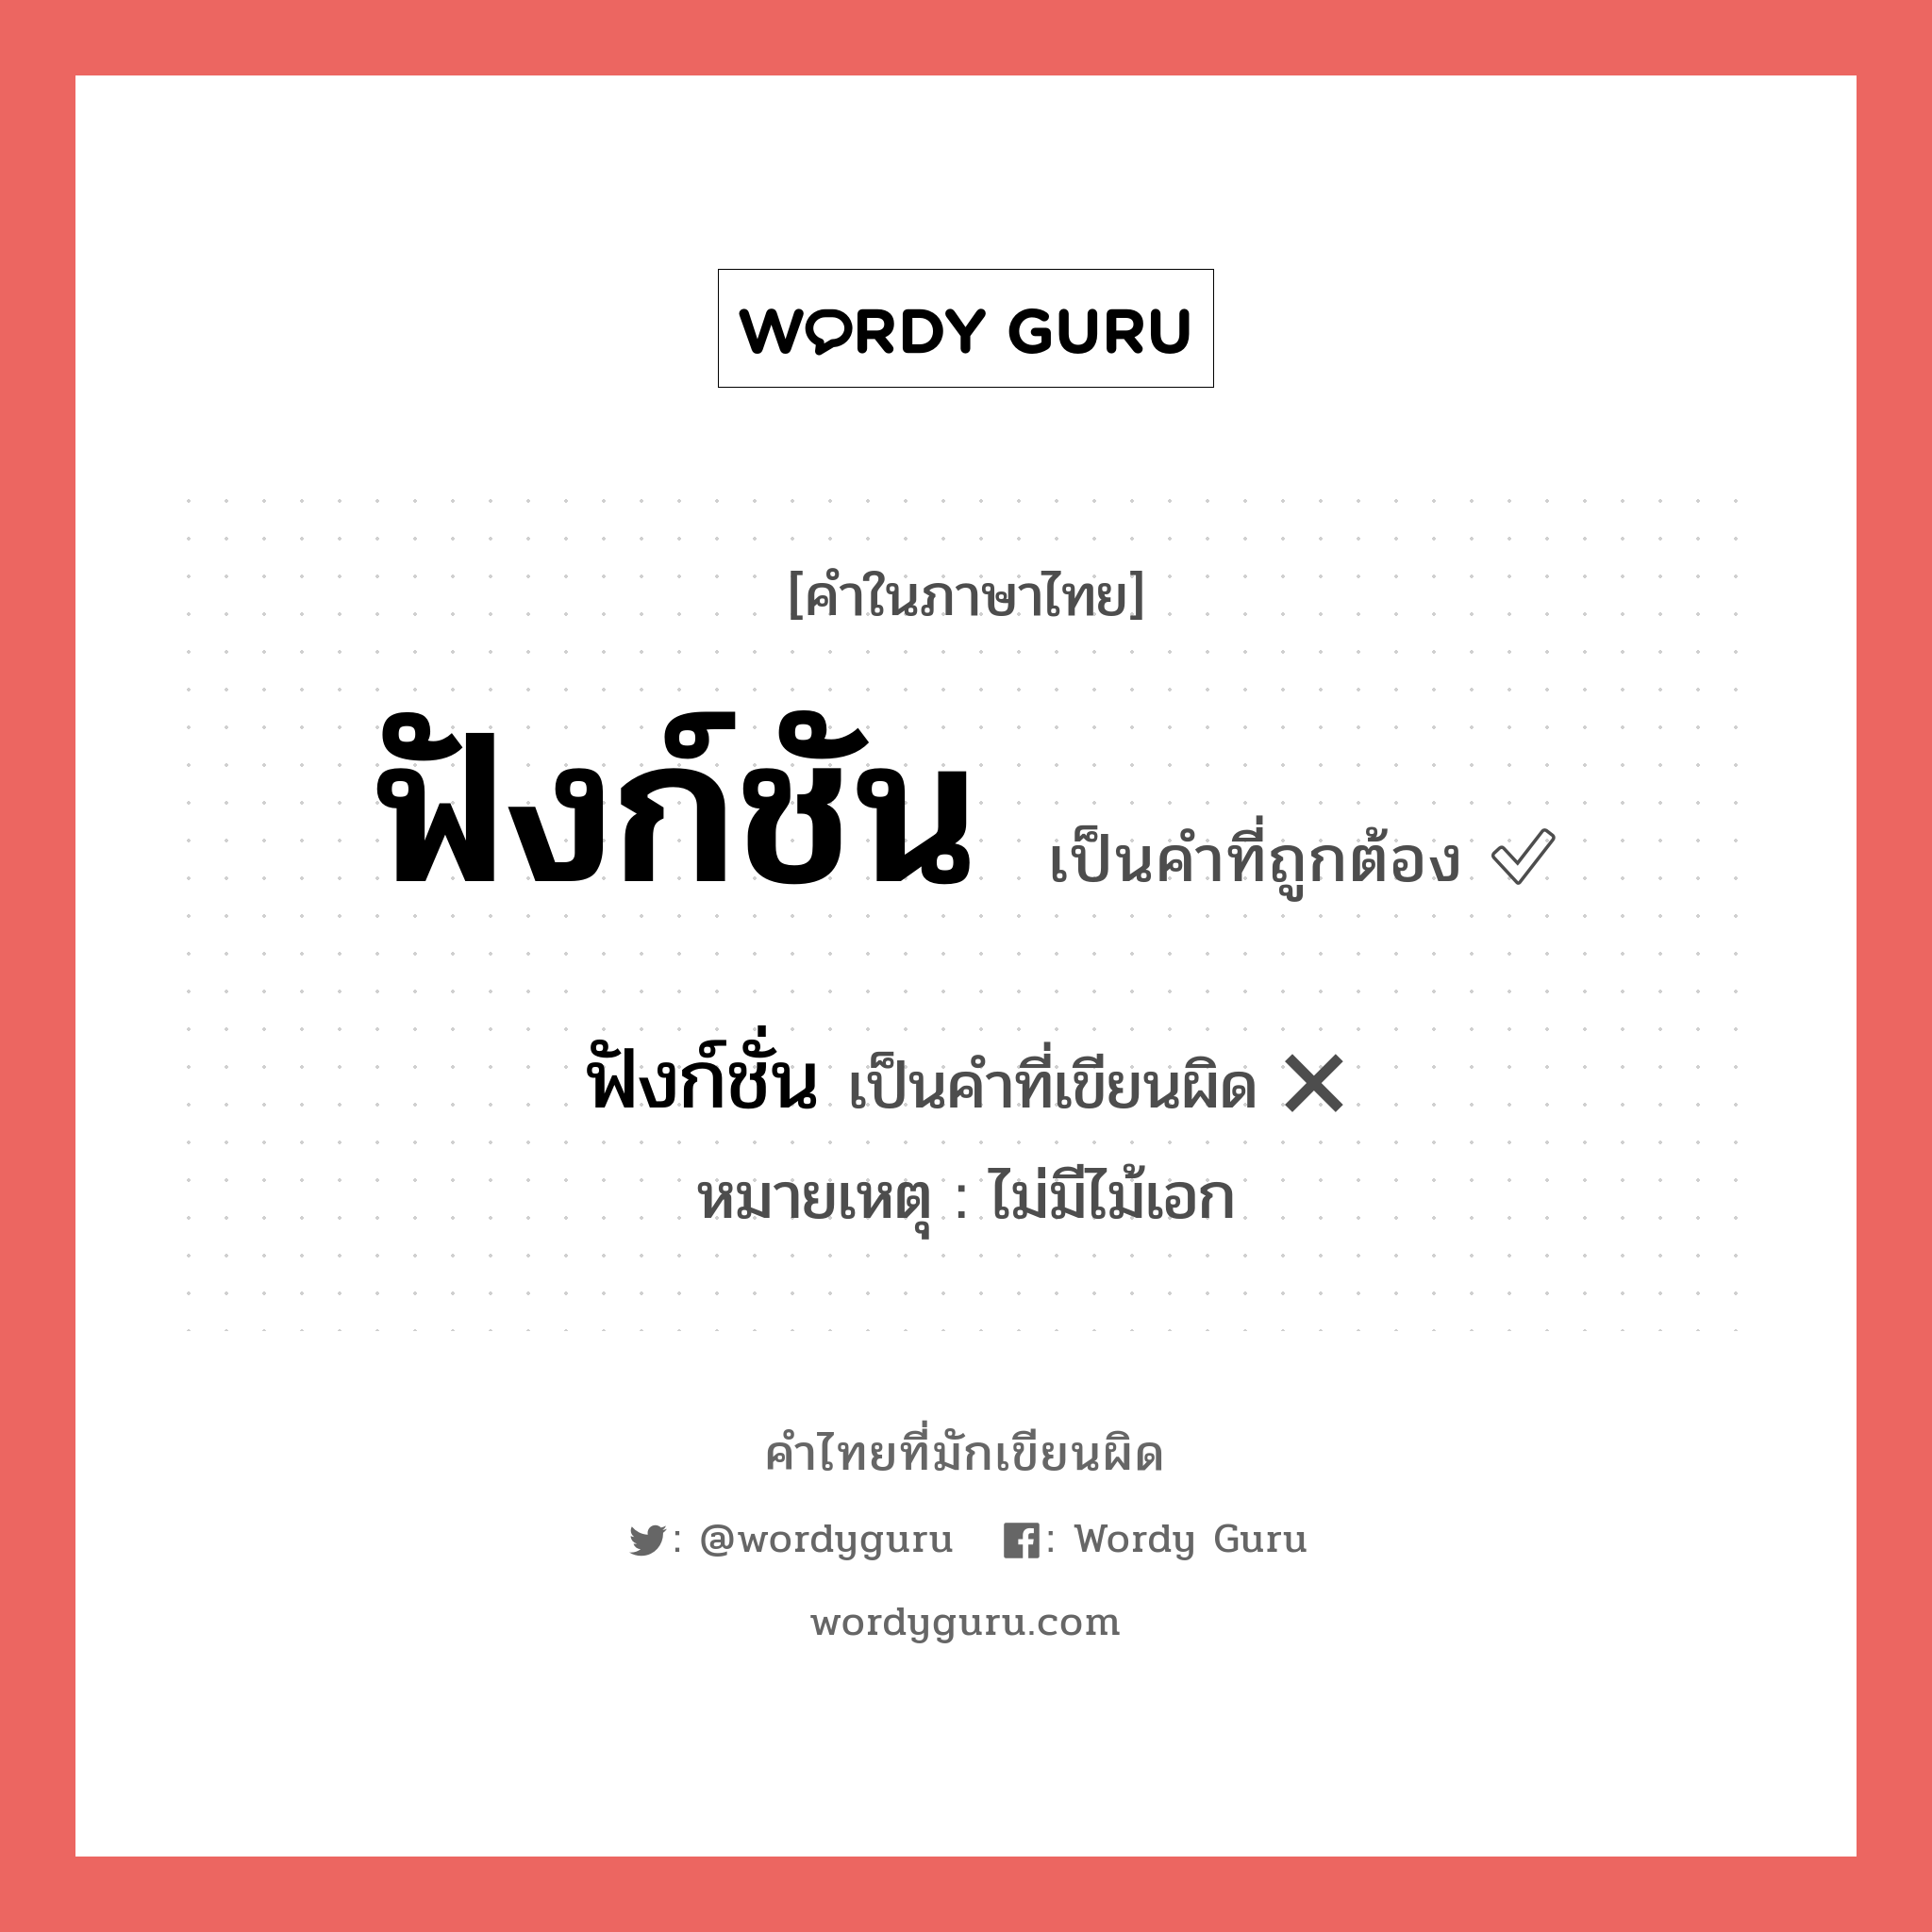 ฟังก์ชัน หรือ ฟังก์ชั่น คำไหนเขียนถูก?, คำในภาษาไทยที่มักเขียนผิด ฟังก์ชัน คำที่ผิด ❌ ฟังก์ชั่น หมายเหตุ ไม่มีไม้เอก